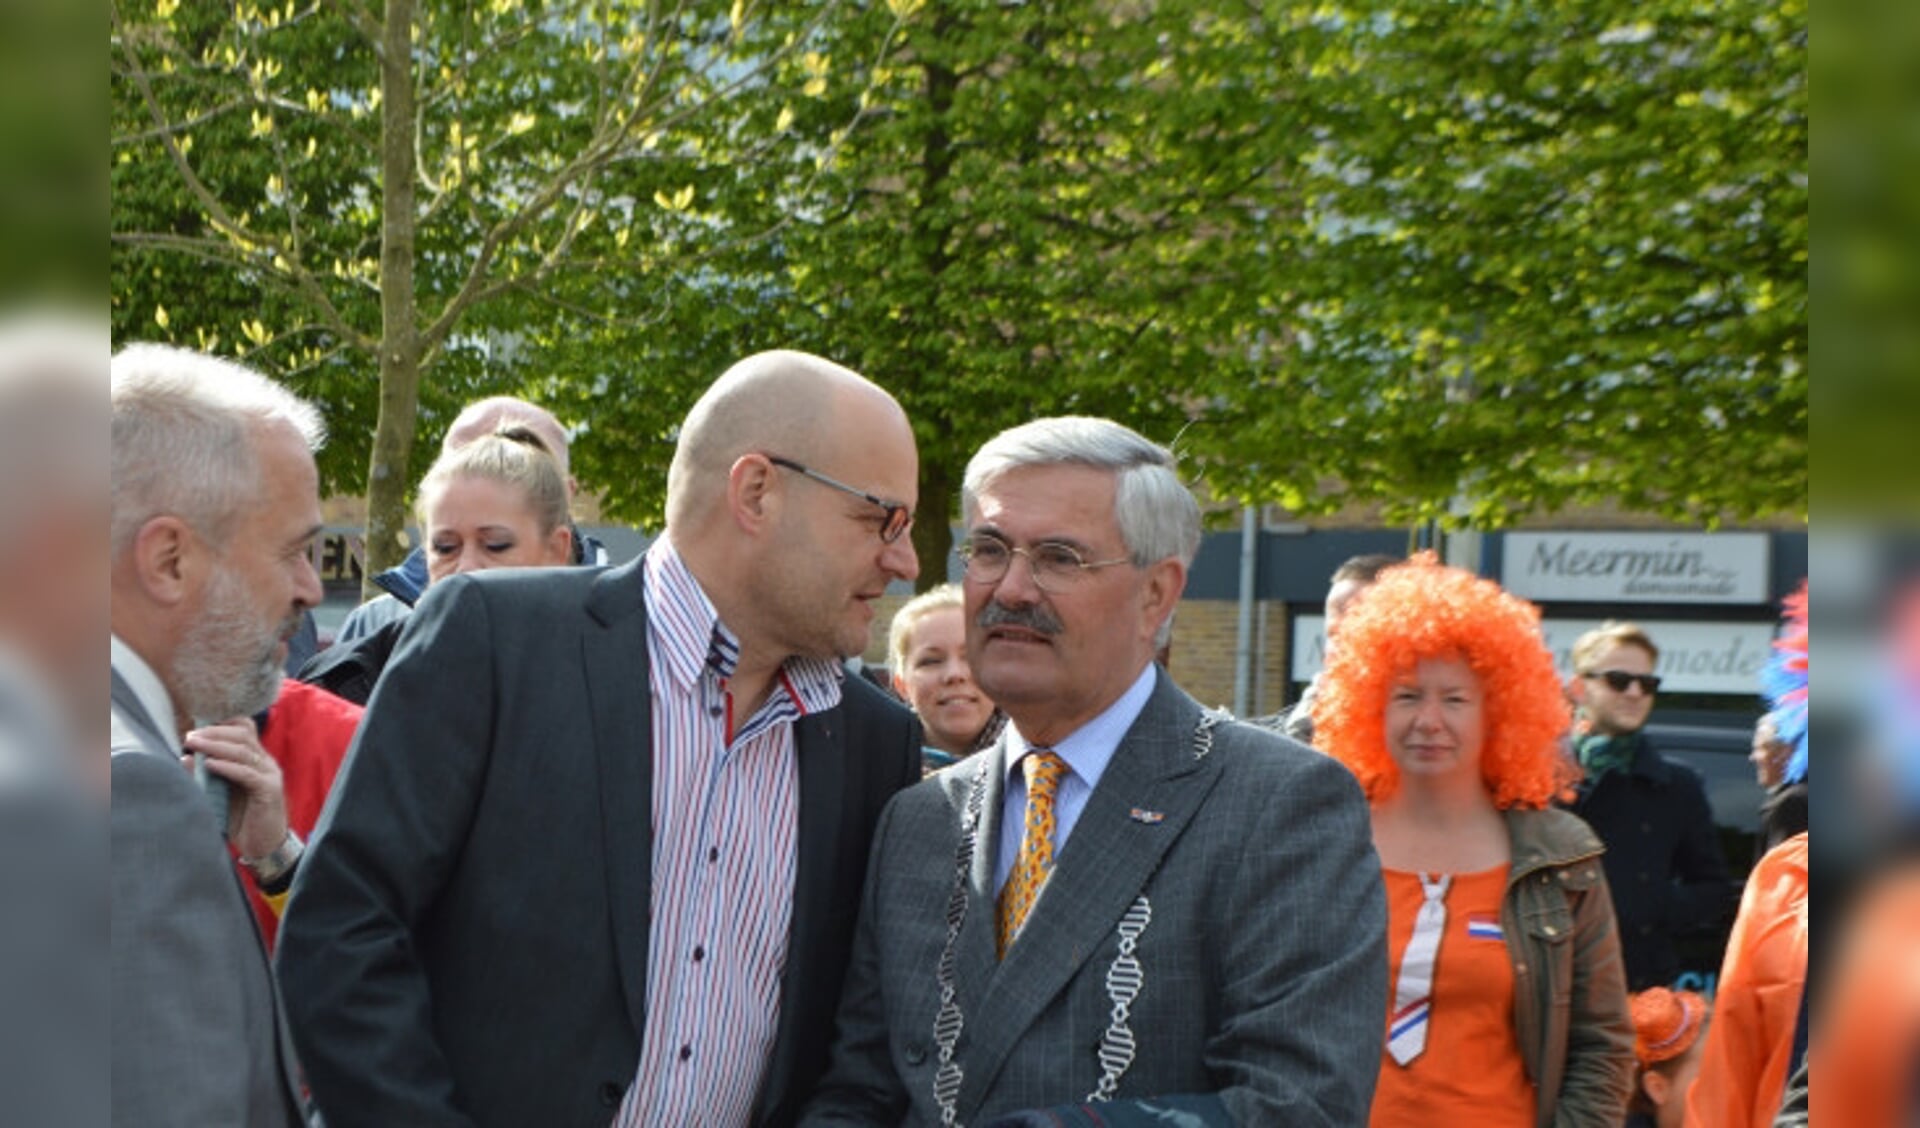  Richard Onderberg (stichting DOES) en burgemeester Aat de Jonge bij de heropening van het Meerpaalplein in 2017.